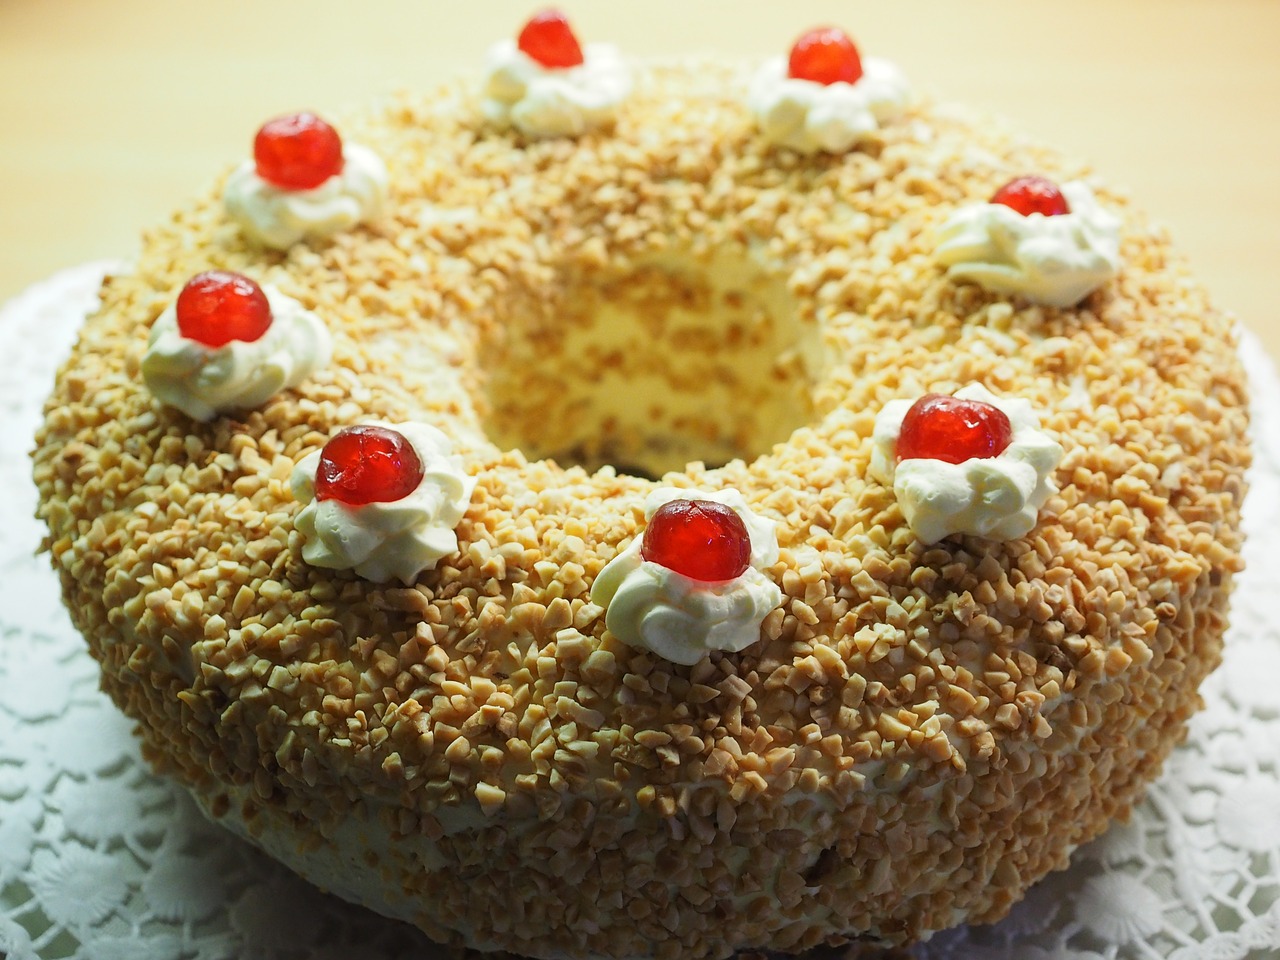 frankfurt wreath cake pie specialty free photo